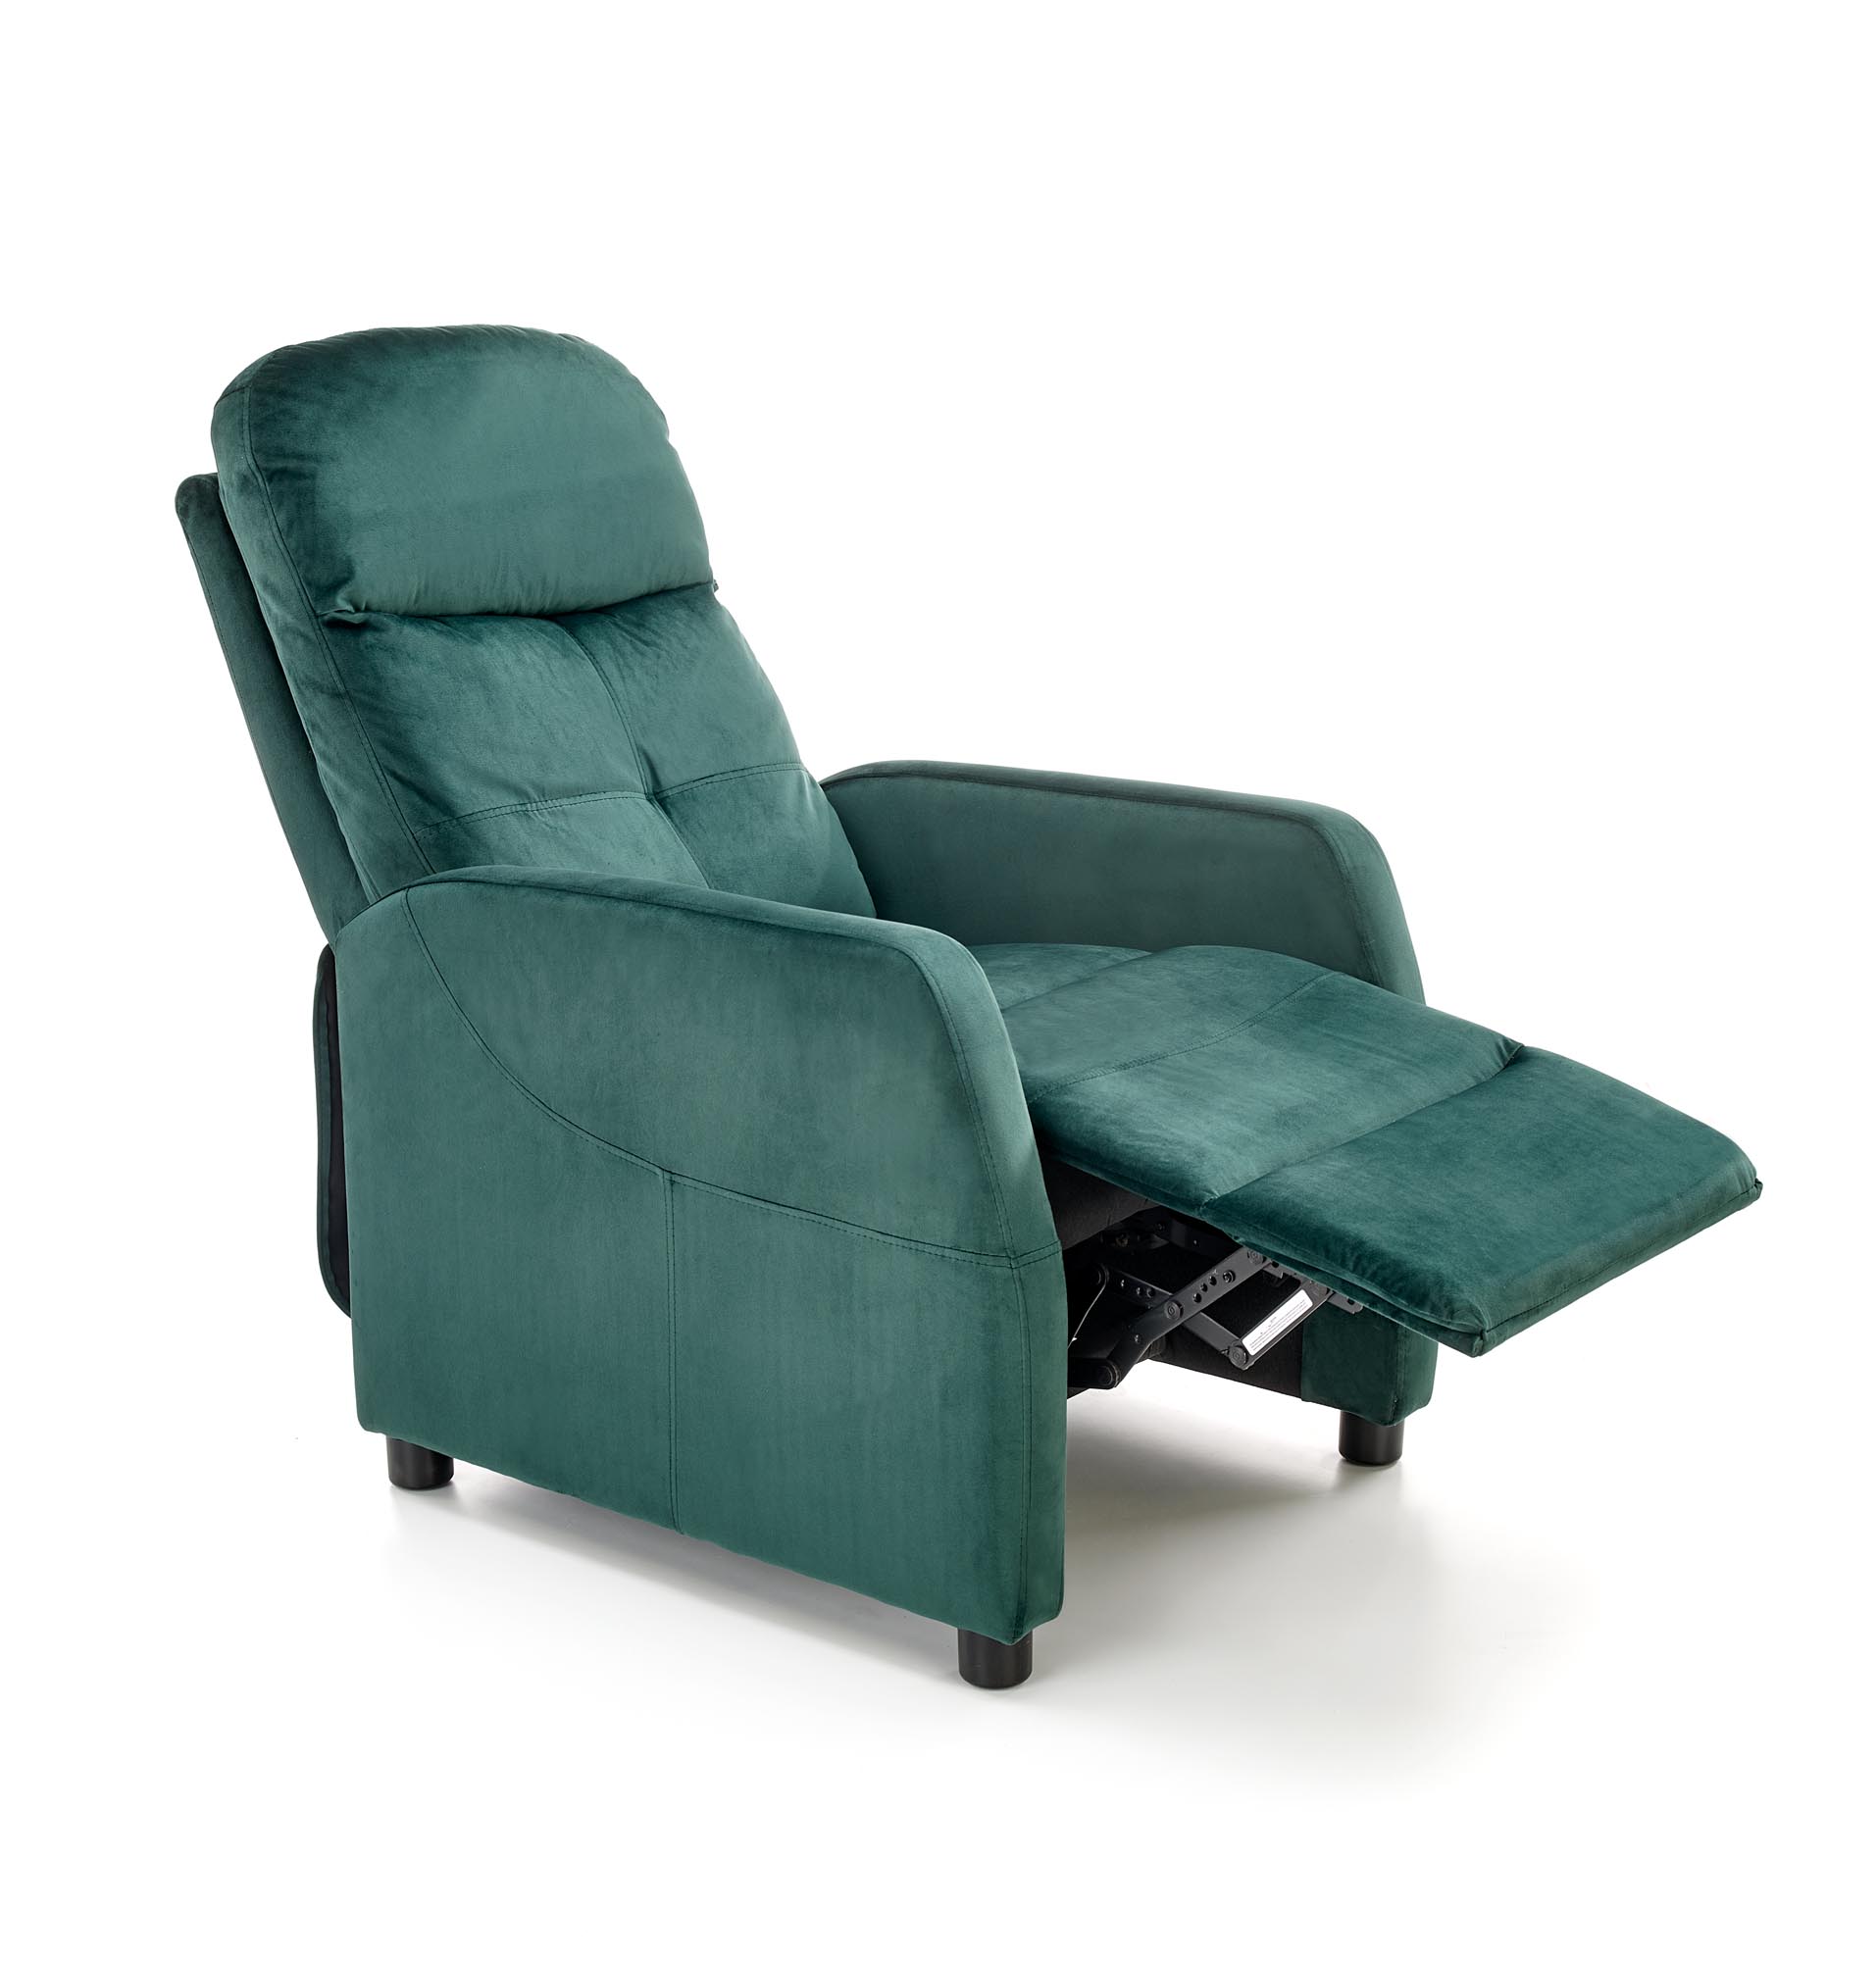 FELIPE 2 fotel wypoczynkowy ciemny zielony, BLUVEL #78 felipe 2 fotel wypoczynkowy ciemny zielony, bluvel #78